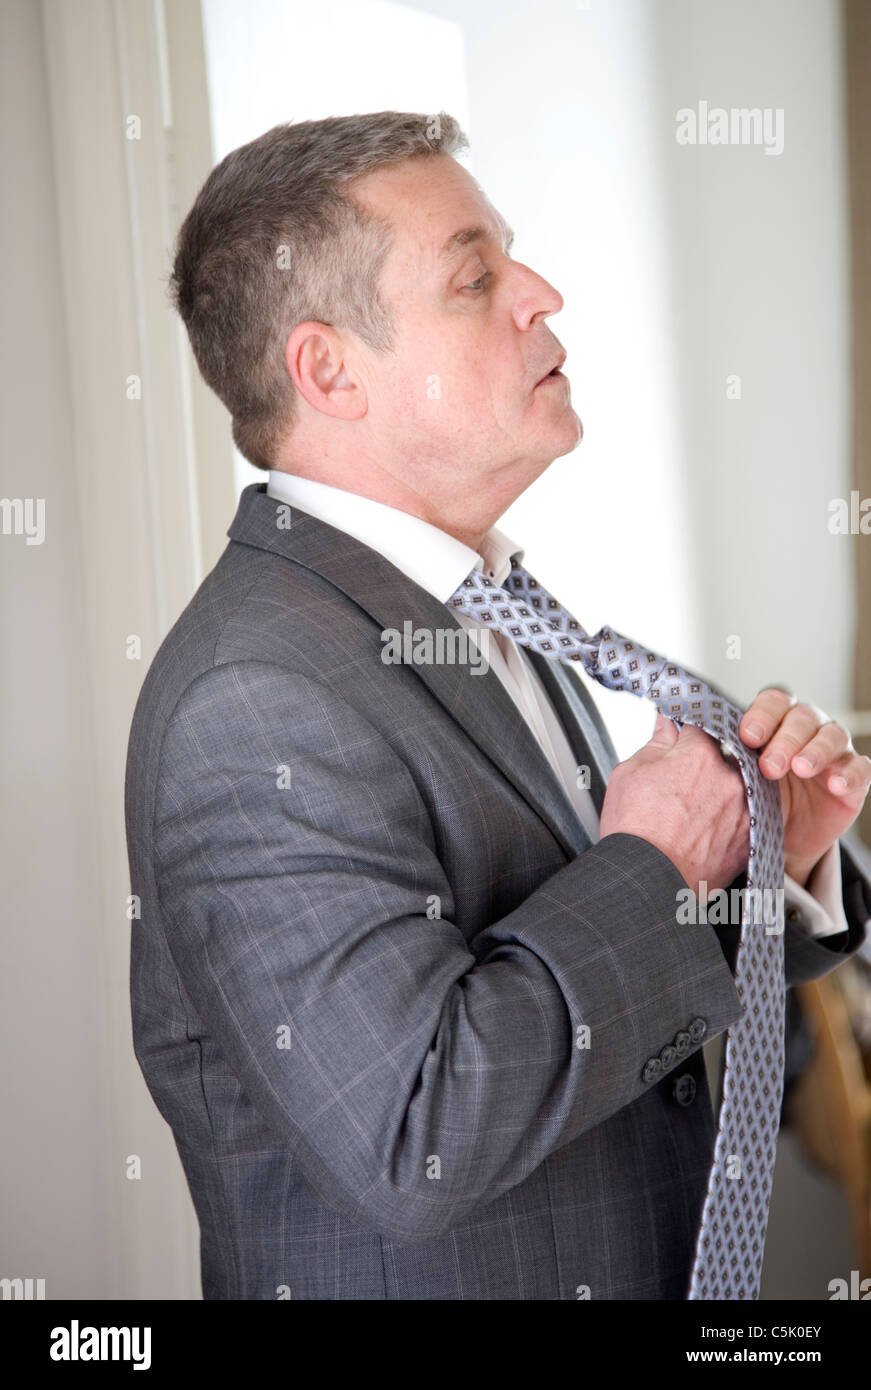 Mann, ankleiden, aufsetzen Krawatte vor der Spiegel Stockfotografie - Alamy